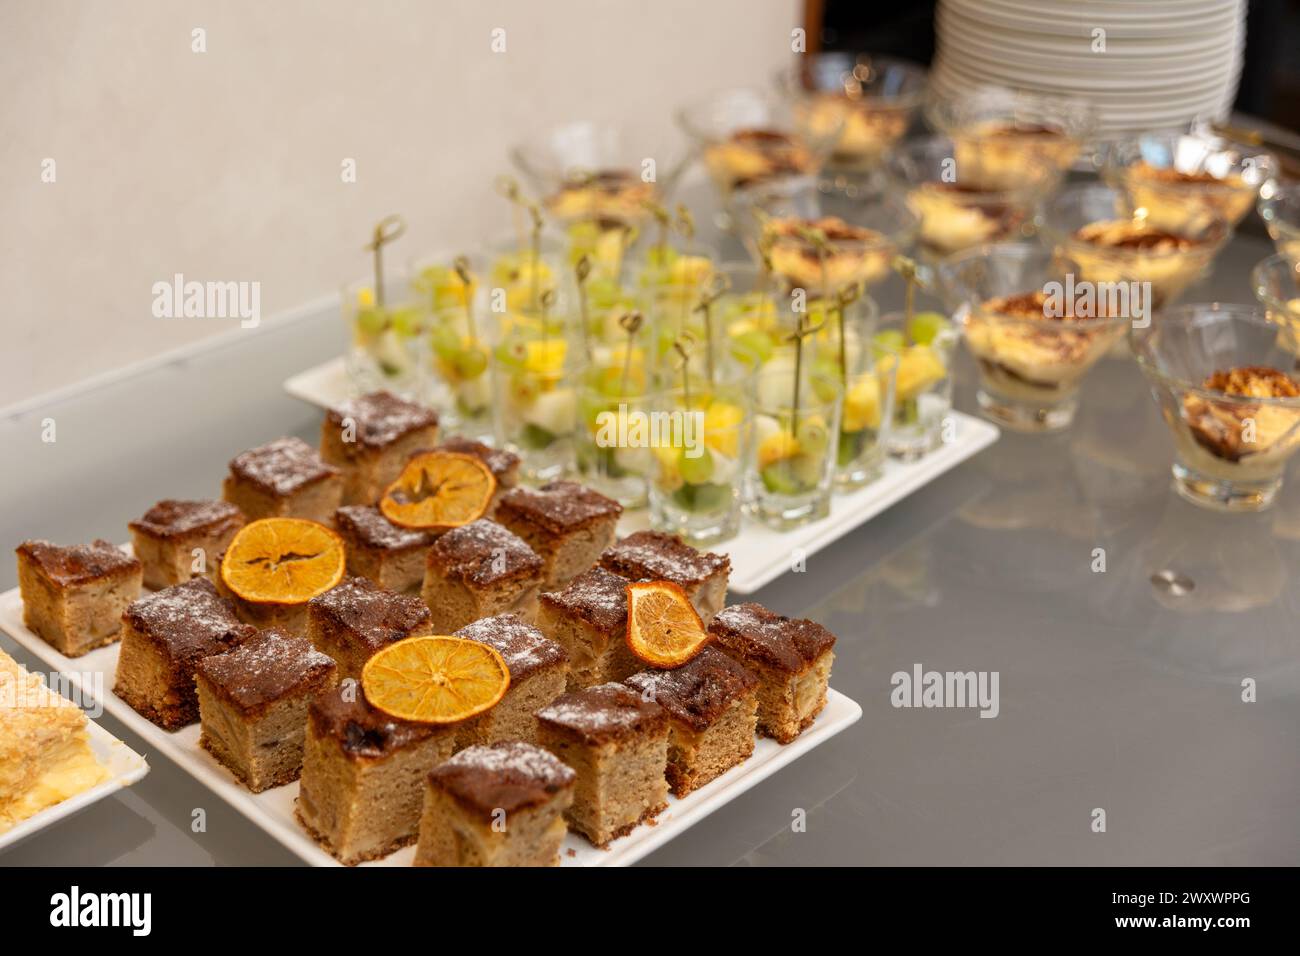 Verschiedene Desserts bei einem Bankett, das einer Hochzeit, einem Geburtstag oder einem anderen festlichen Datum gewidmet ist. Stockfoto